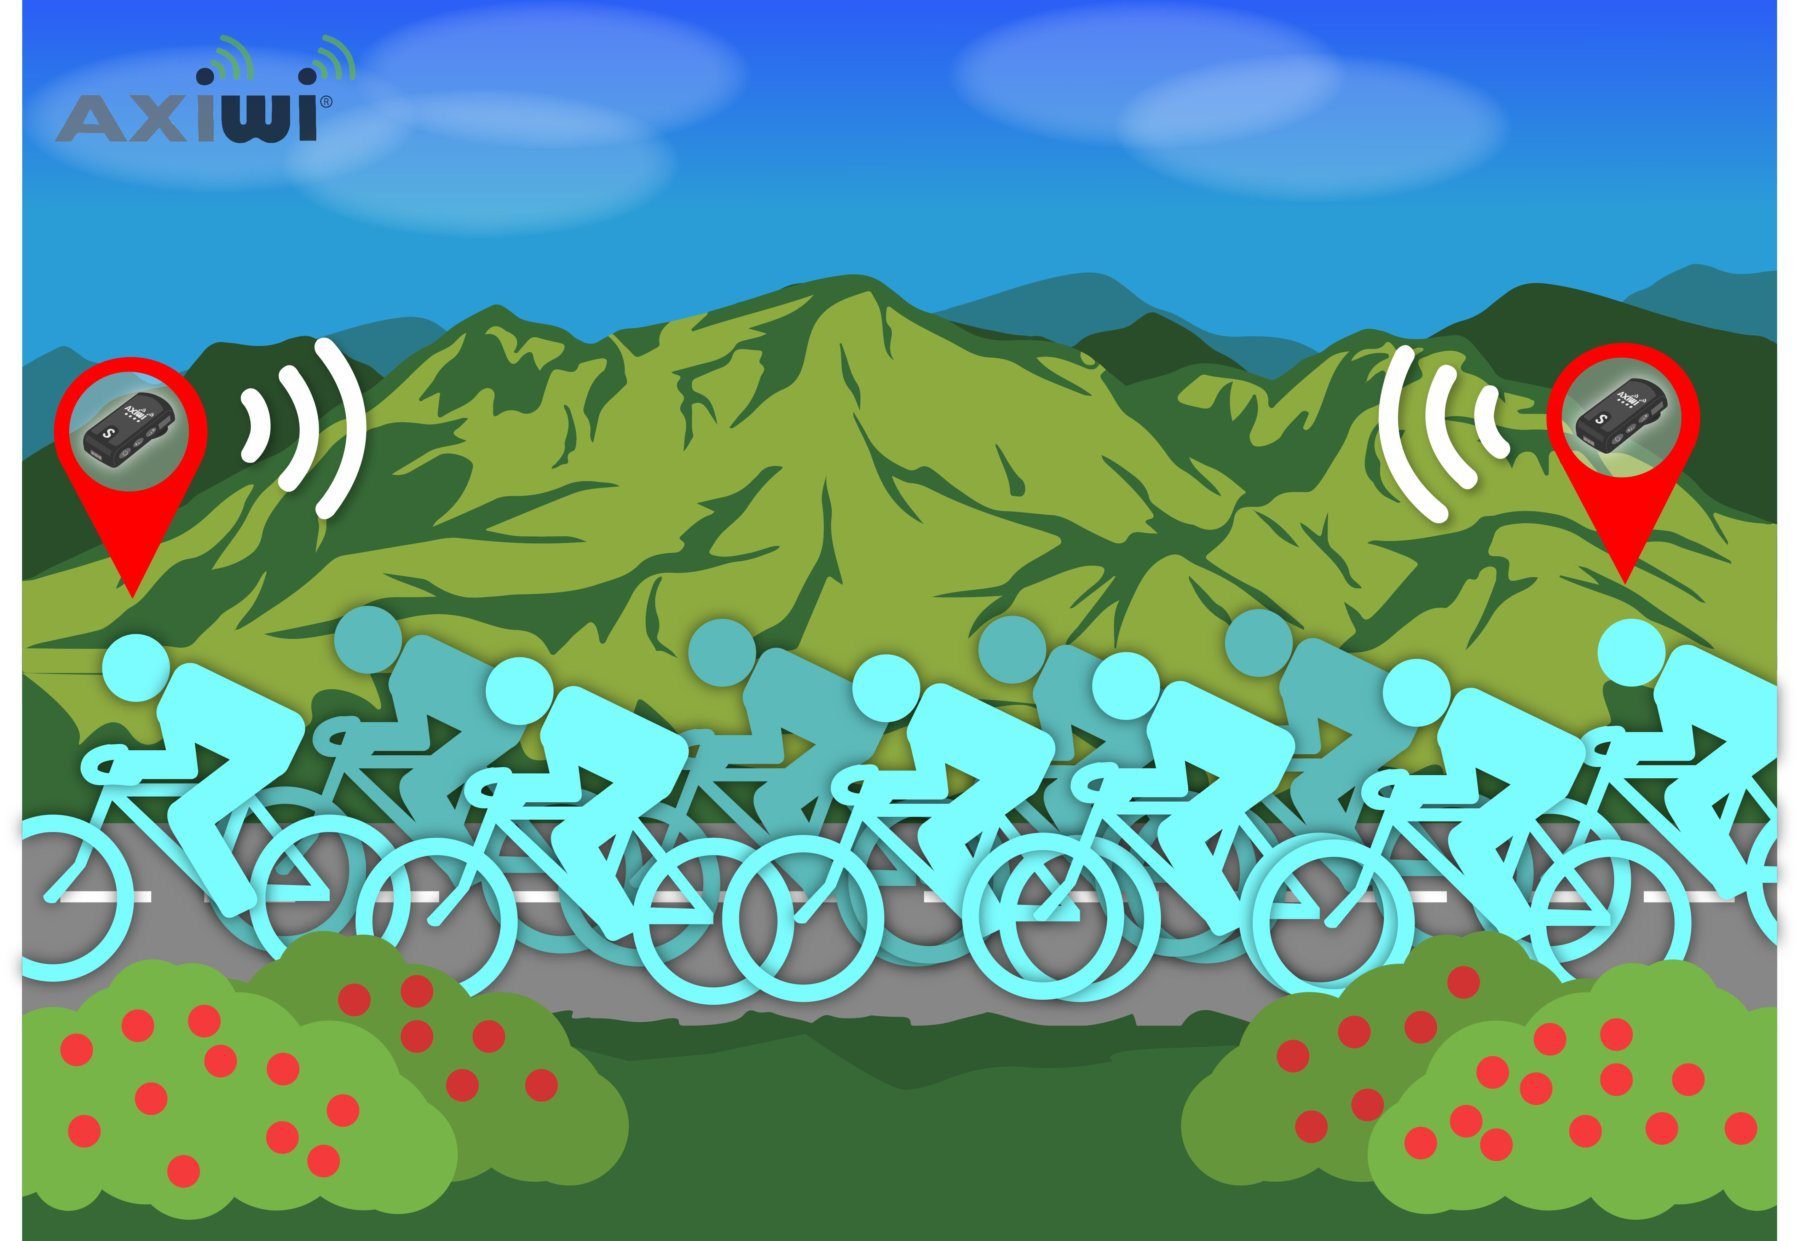 axiwi-communicatie-systeem-fietsen-groep